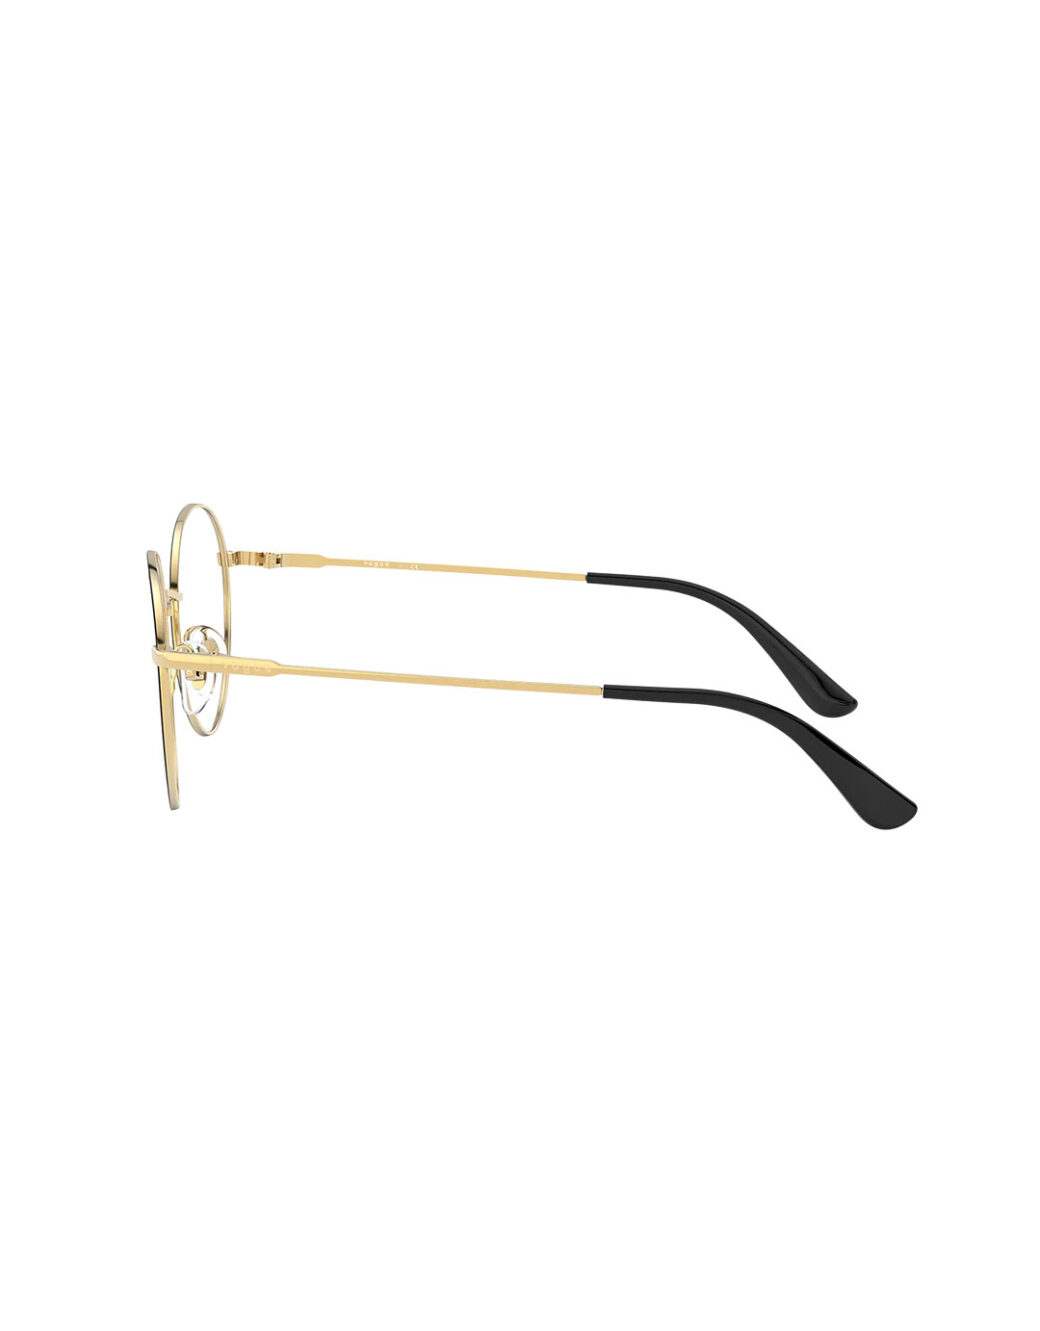 Vogue Eyewear - Shop Women Eyeglasses from UAE Optics - uaeoptics.com